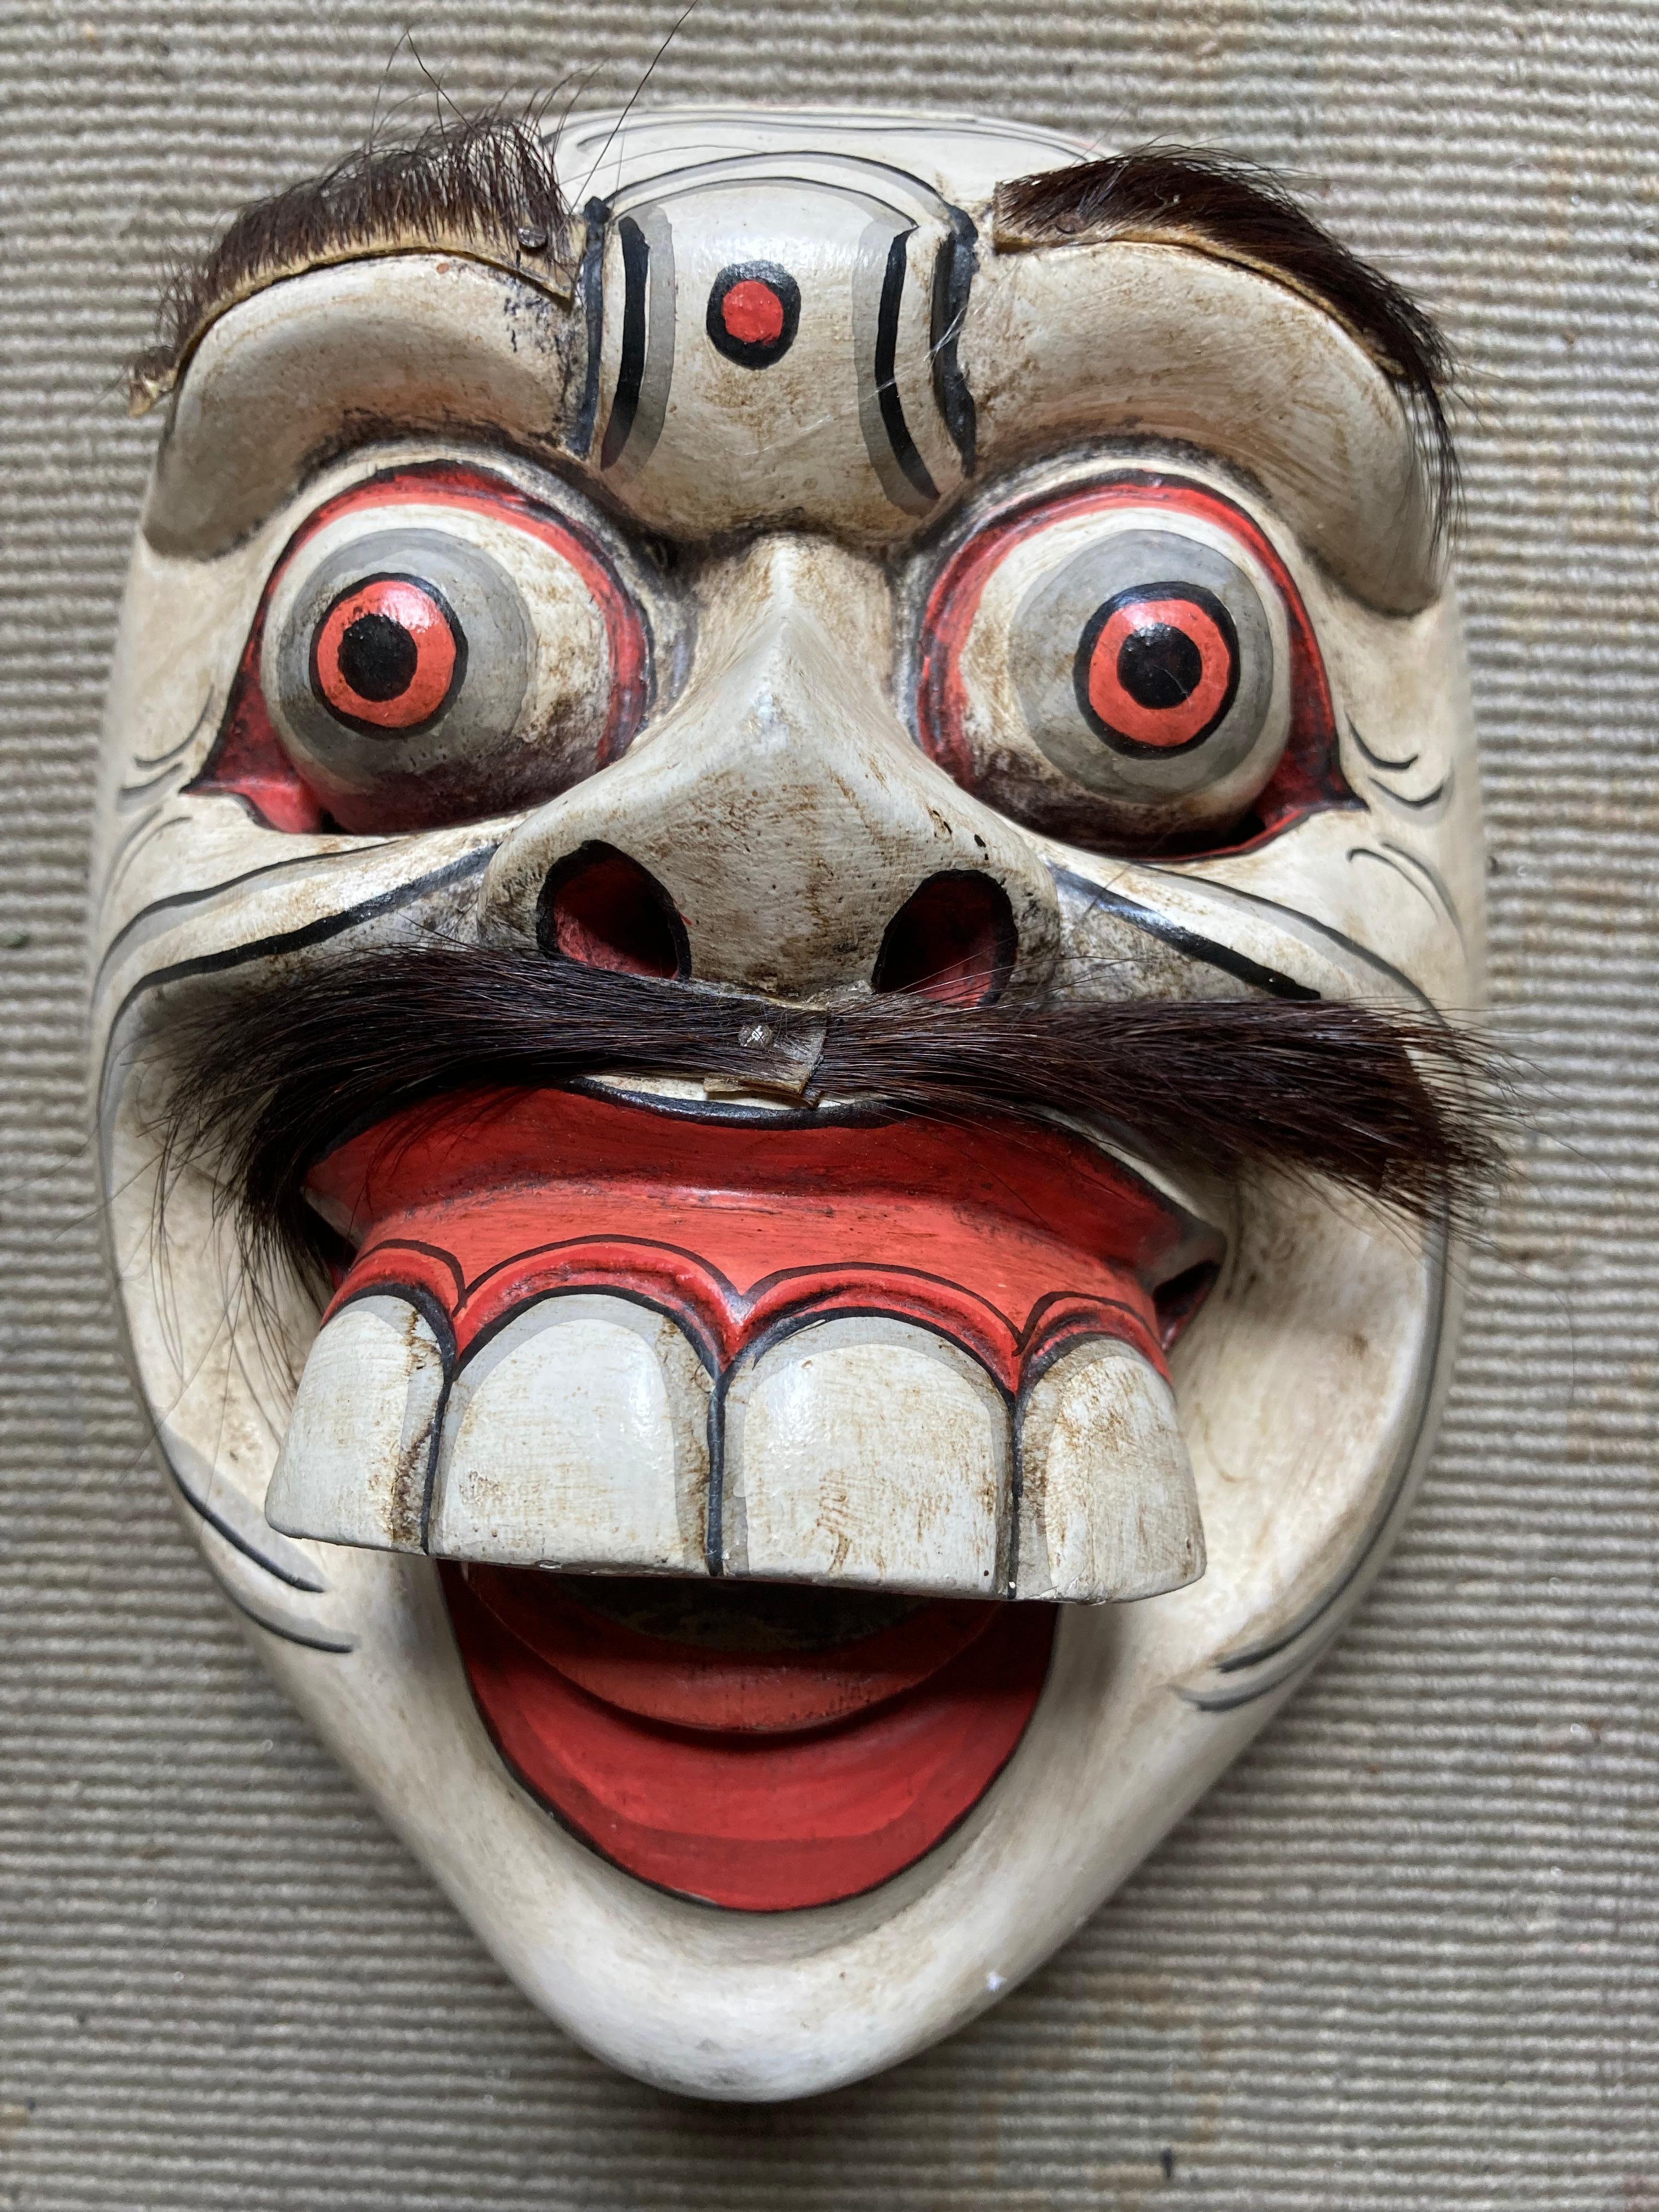 Kollektion antiker handgeschnitzter japanischer Noh-Masken (Braun), Figurative Sculpture, von Unknown